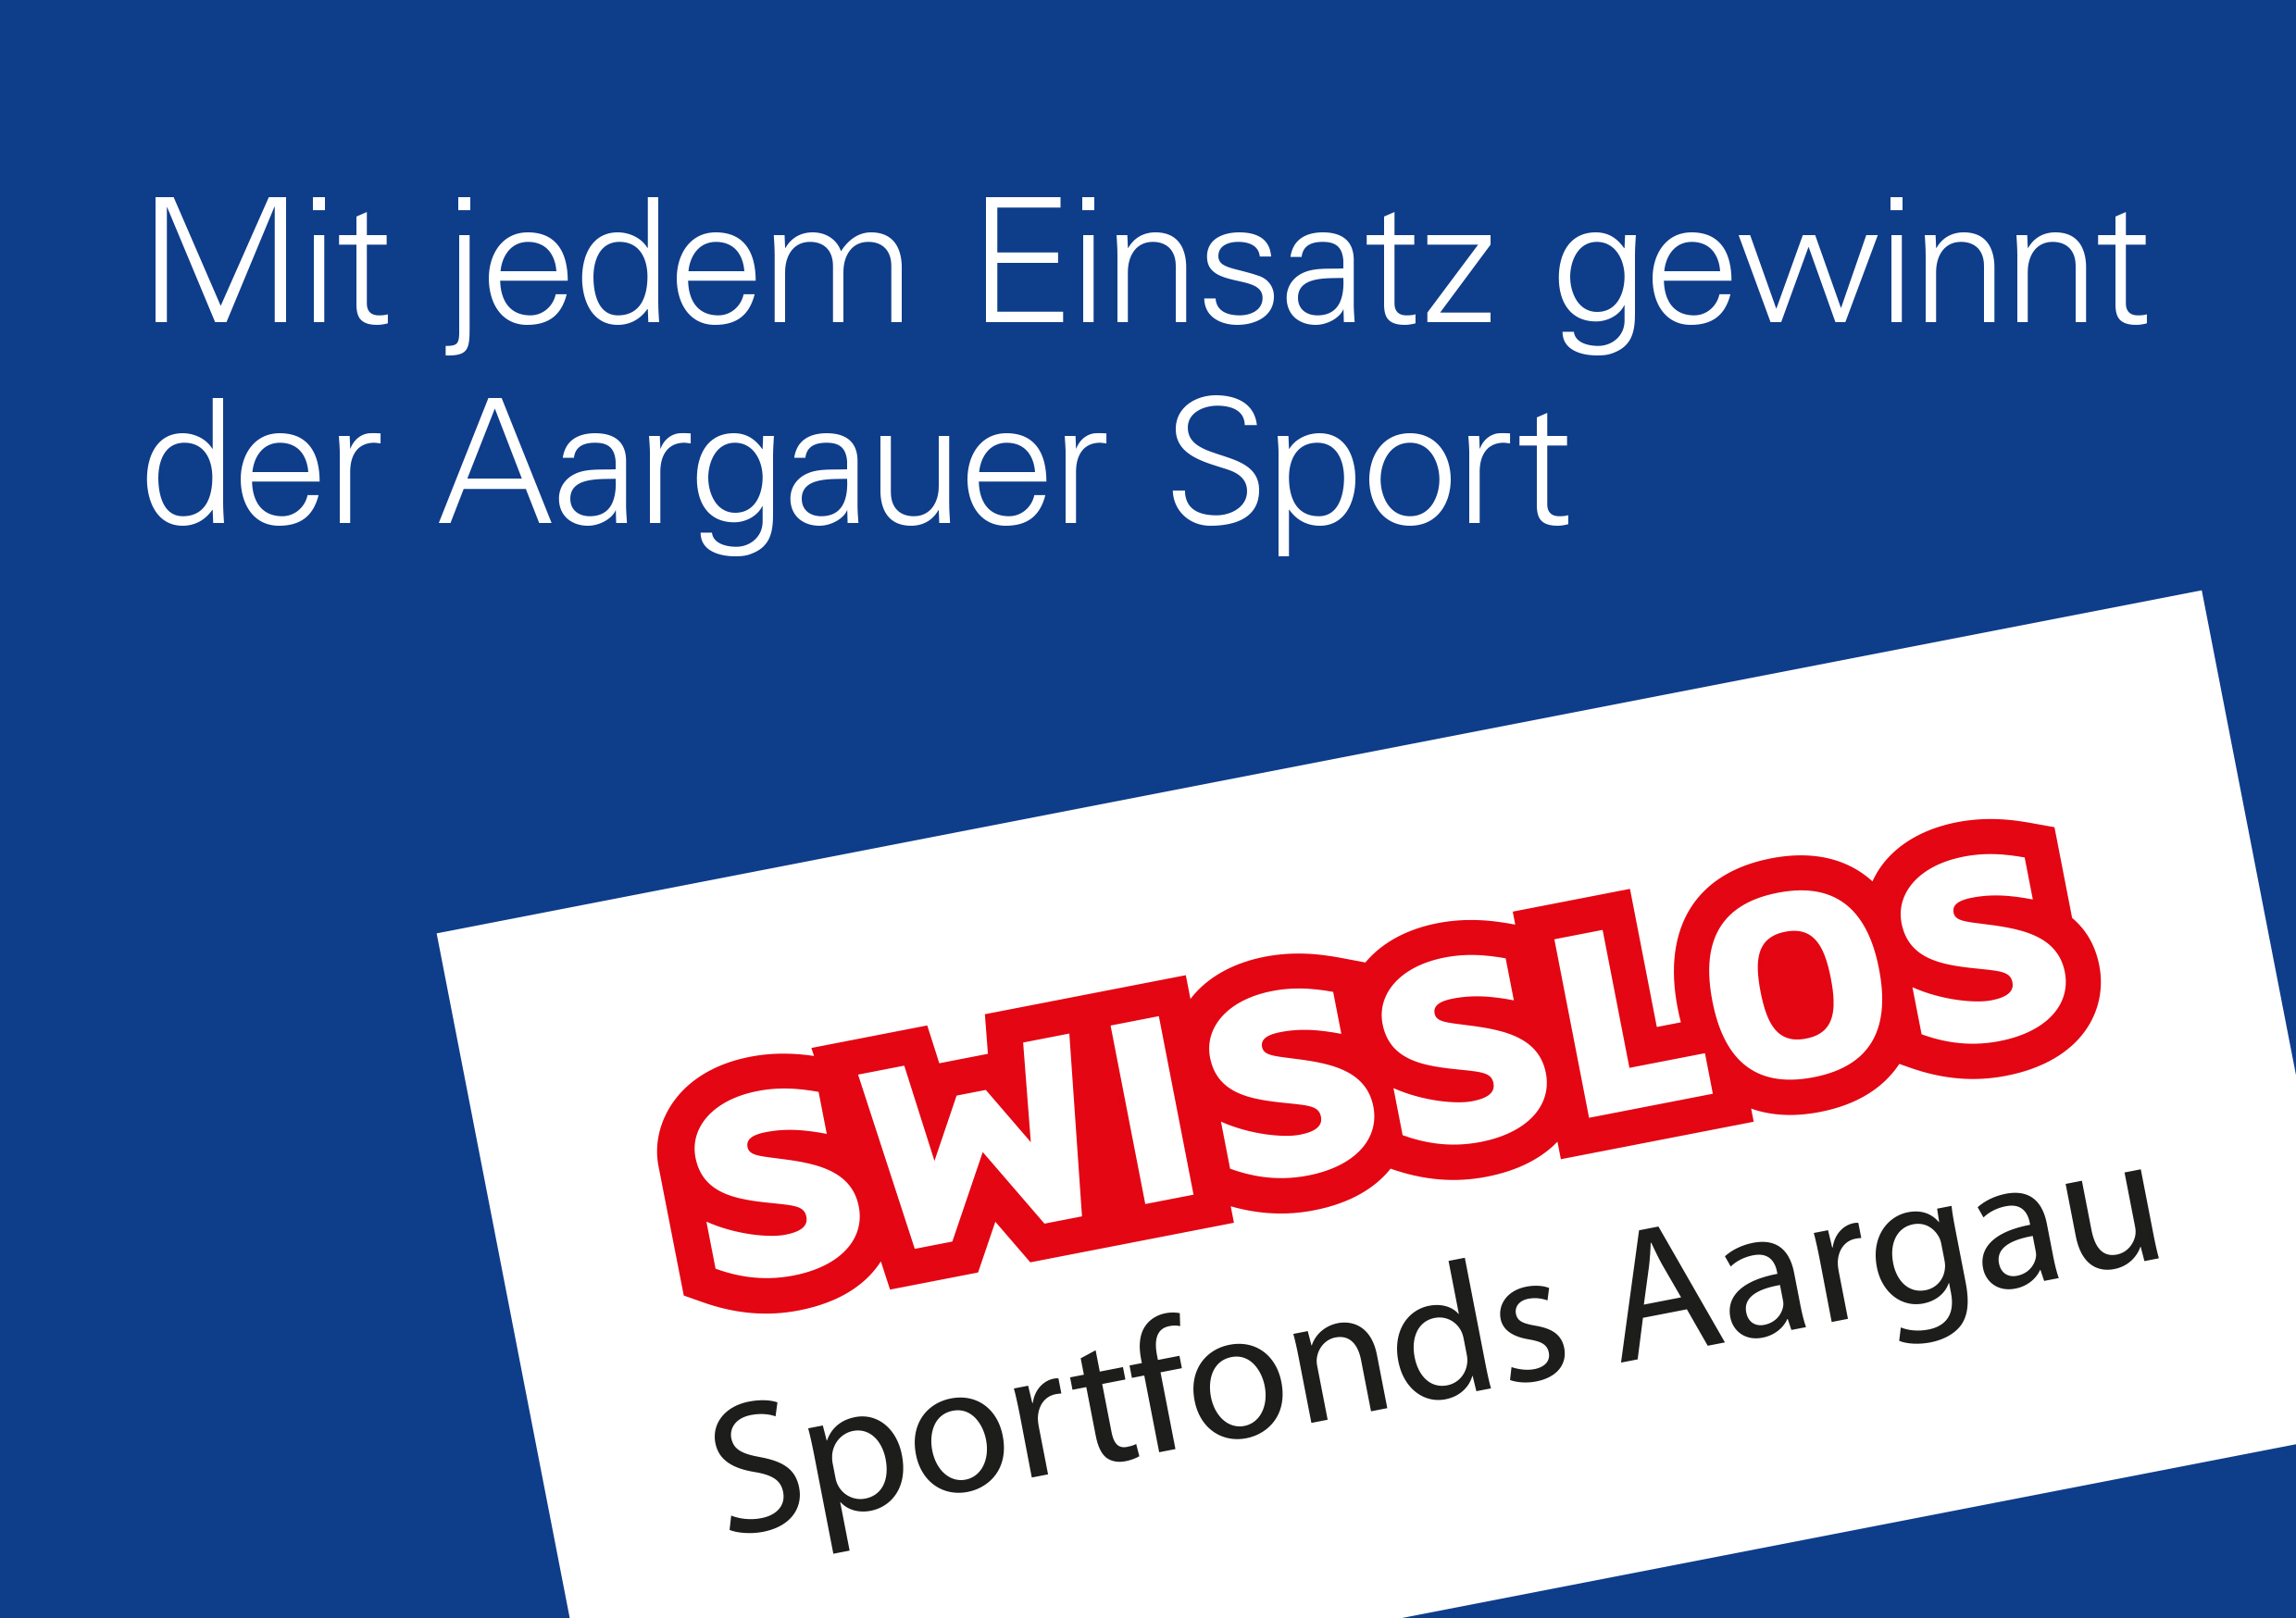 Swisslos-Sportfonds Aargau